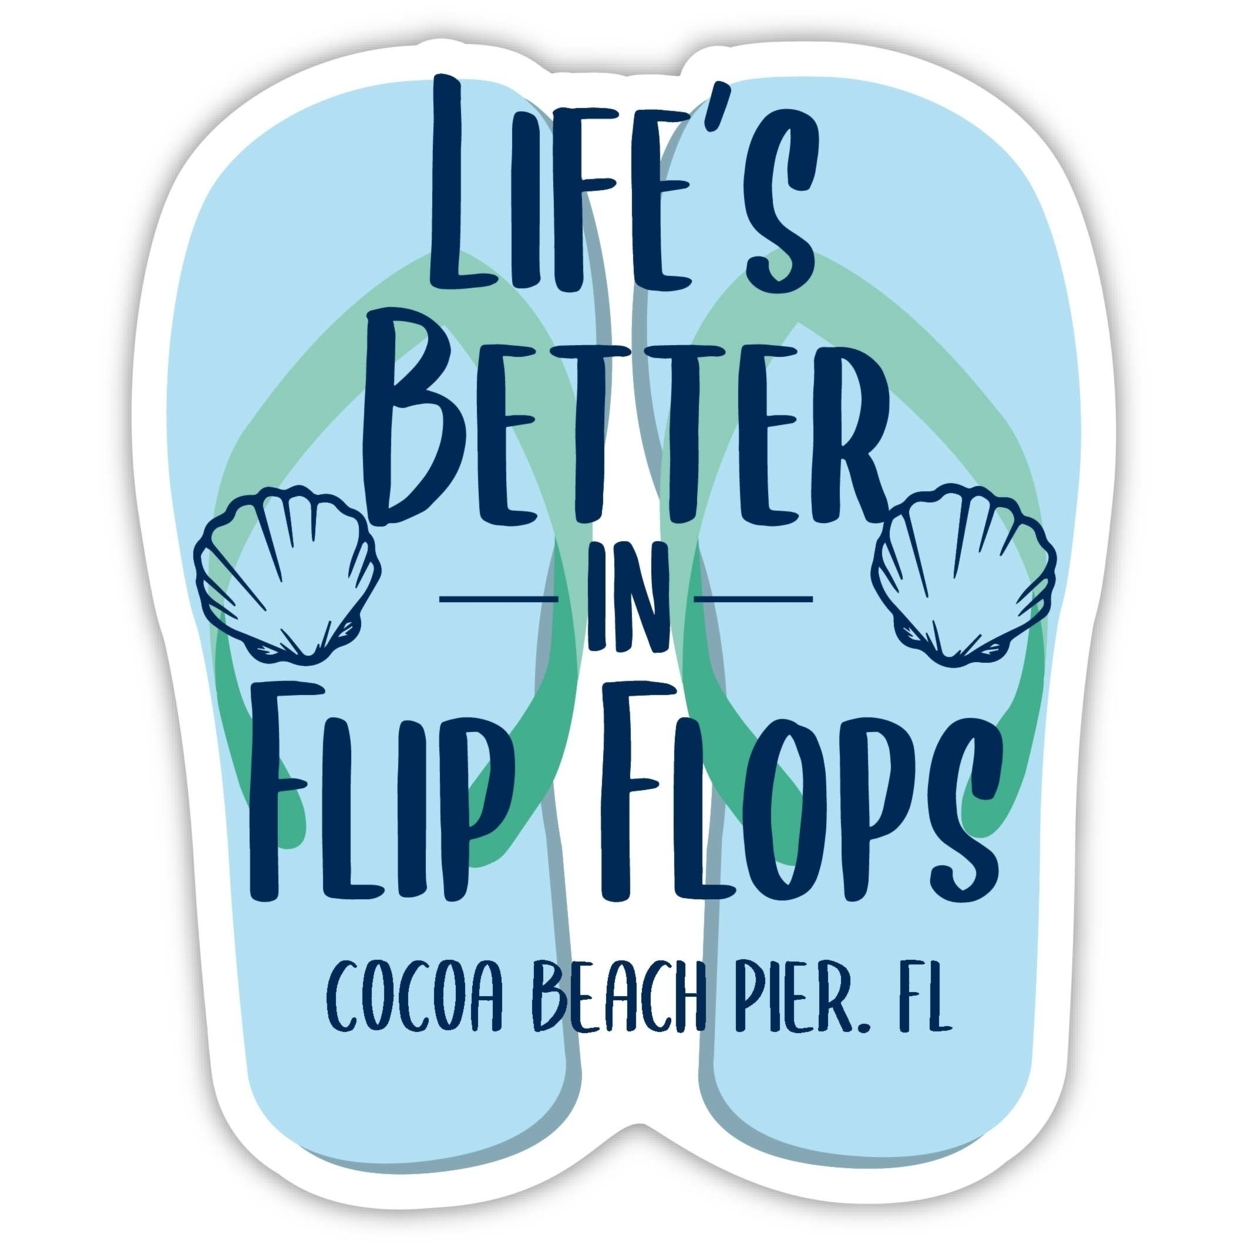 Cocoa Beach Pier Florida Souvenir 4 Inch Vinyl Decal Sticker Flip Flop Design